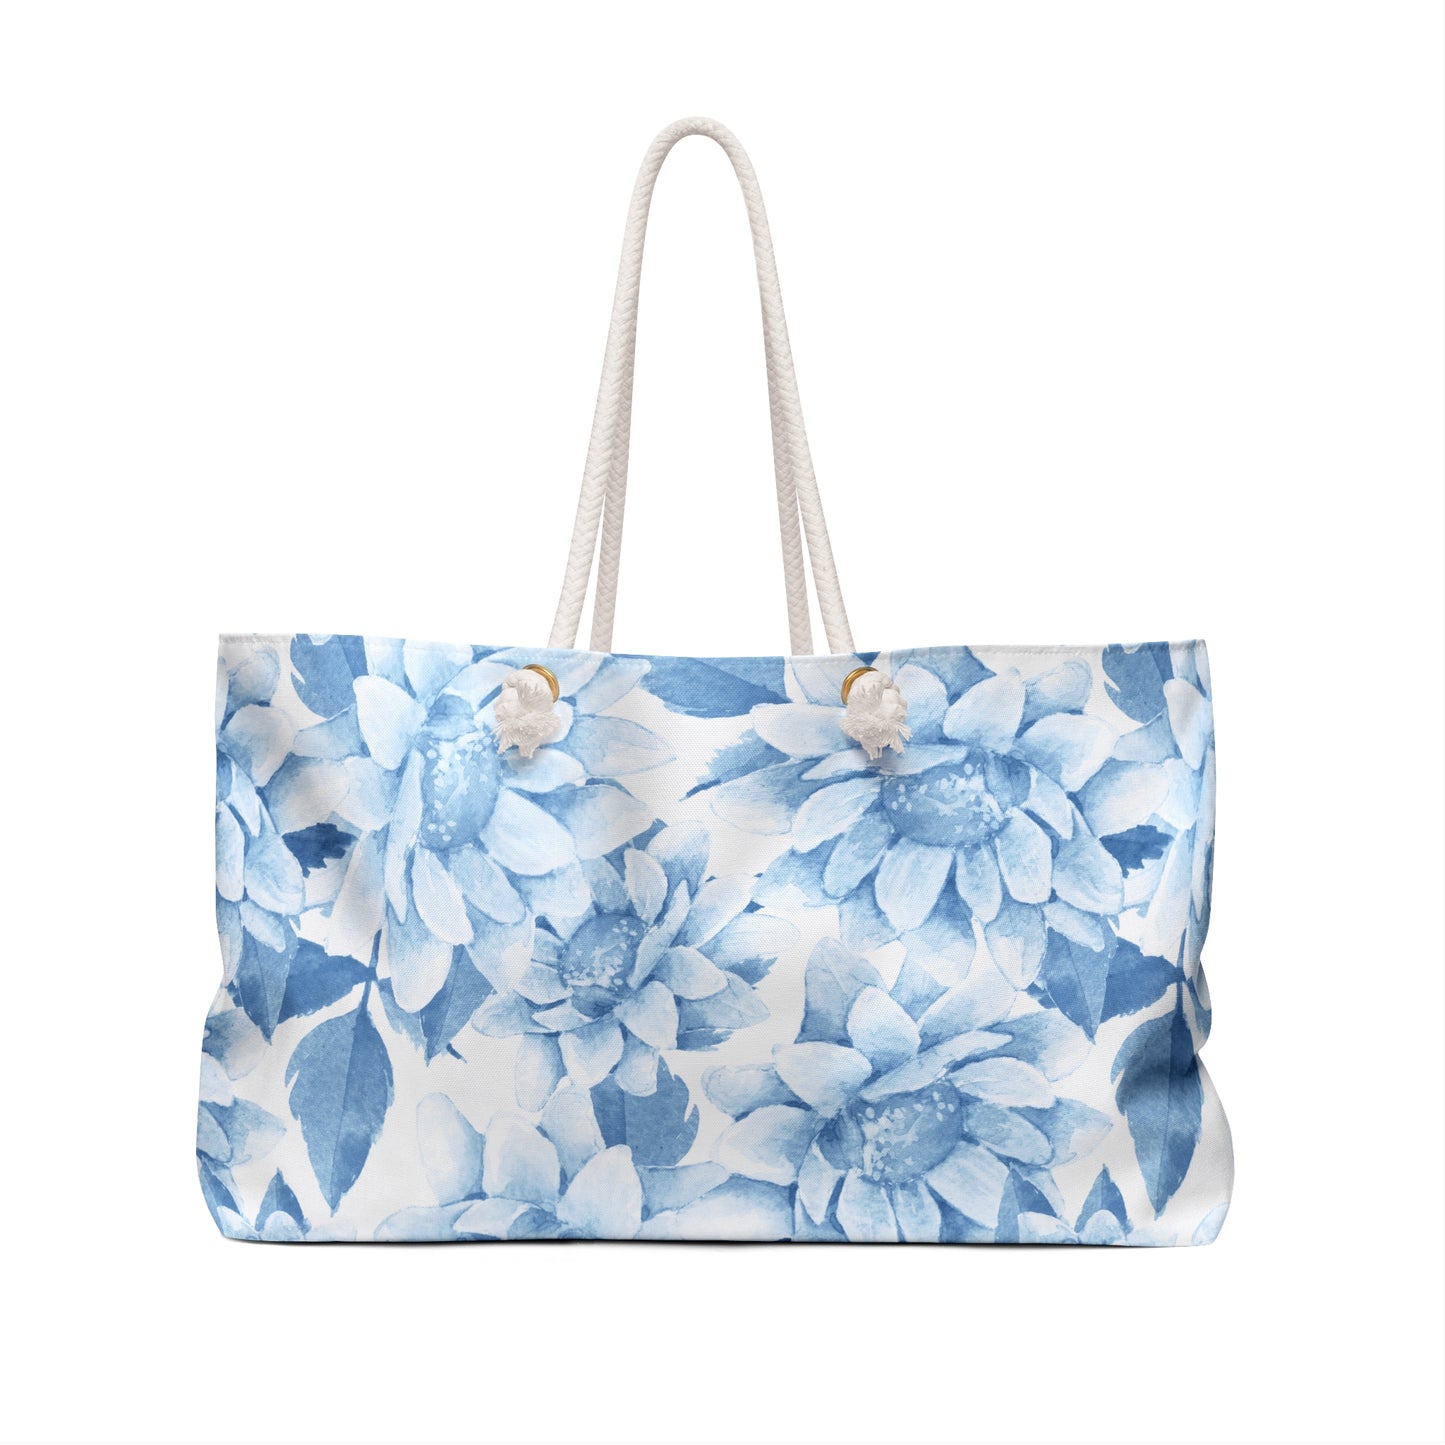 Floral Weekender Bag, Blue Chrysanthemum Print  Tote Bag